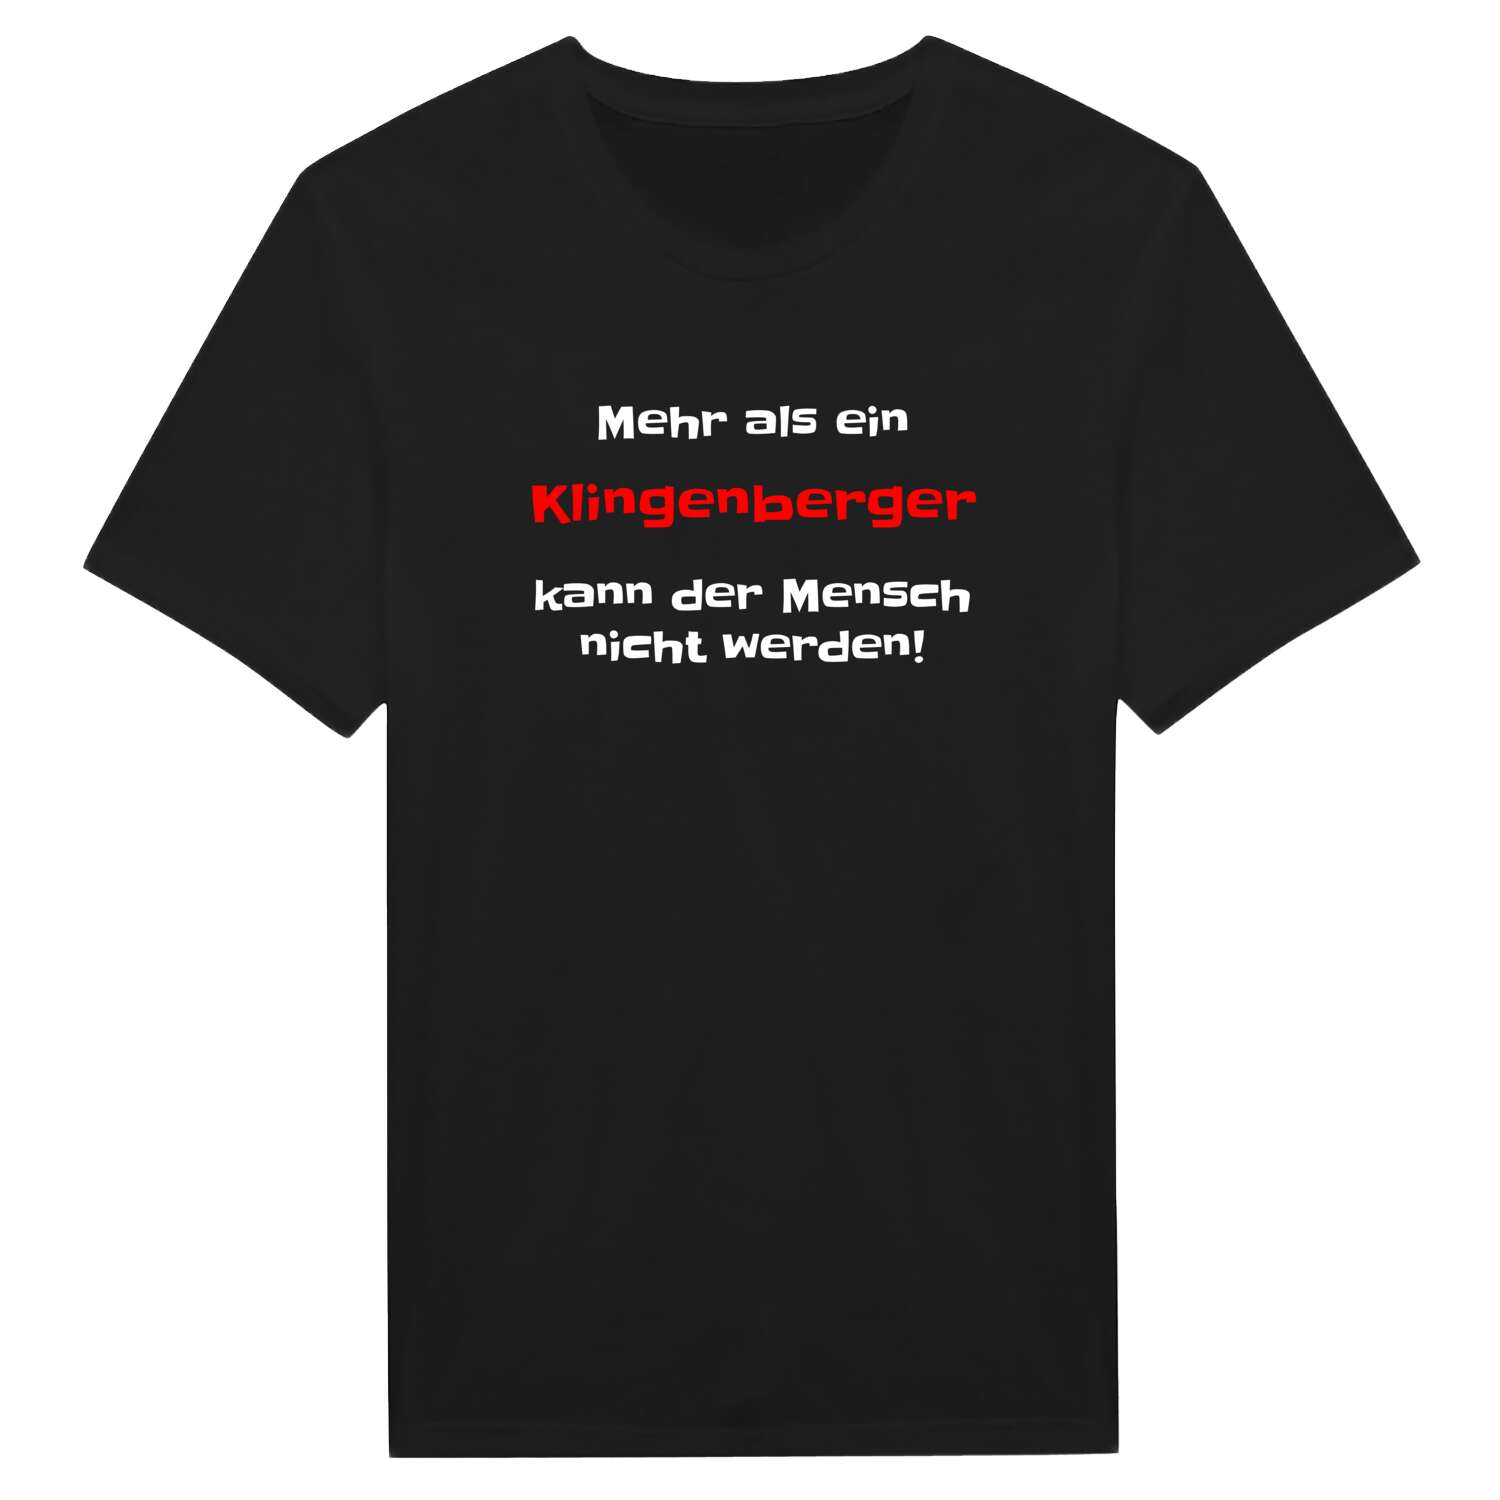 Klingenberg T-Shirt »Mehr als ein«